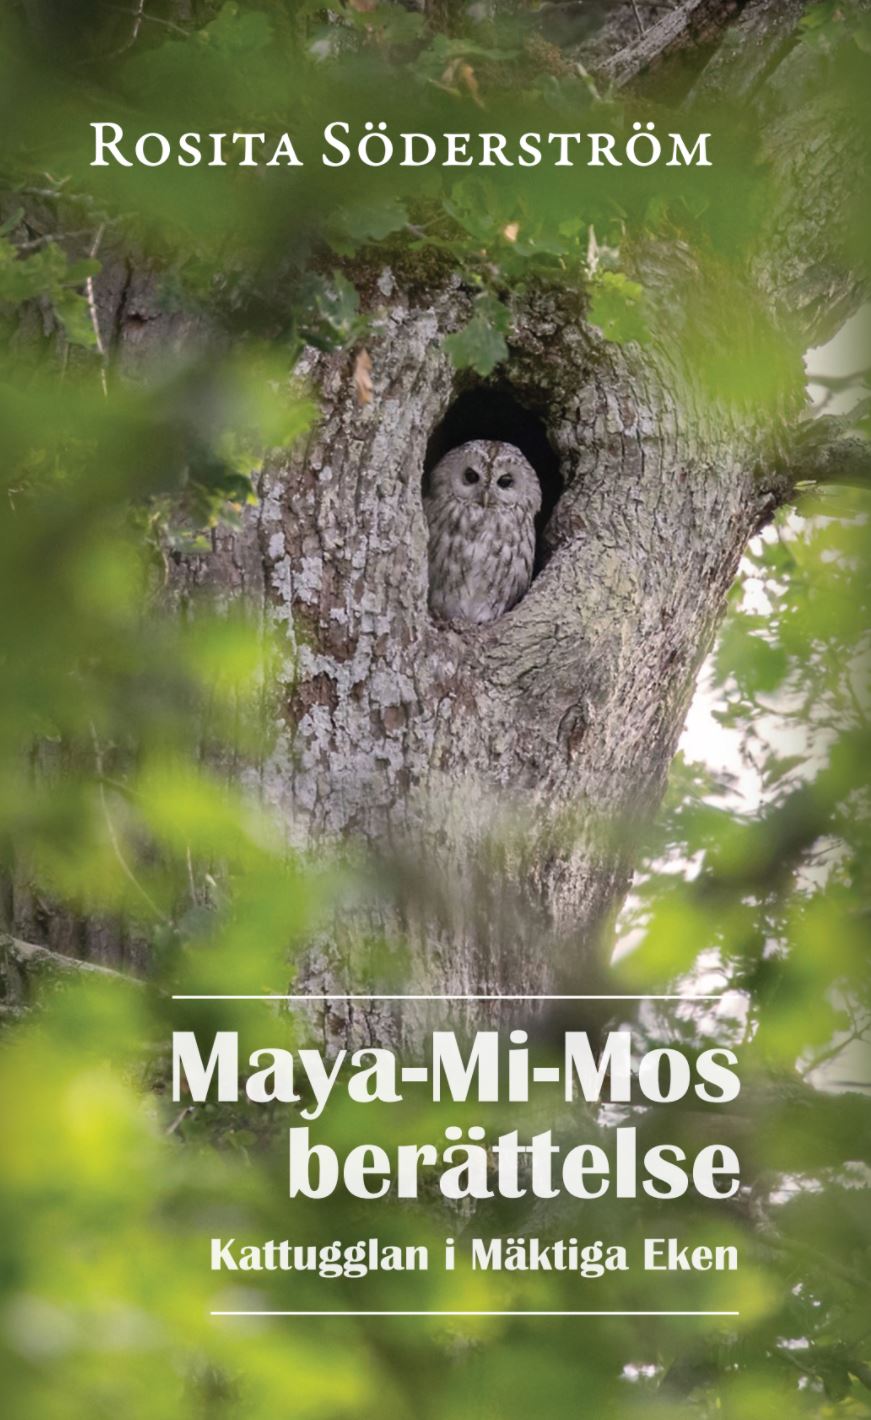 Maya-Mi-Mos berättelse - Kattugglan i Mäktiga Eken av Rosita Söderström